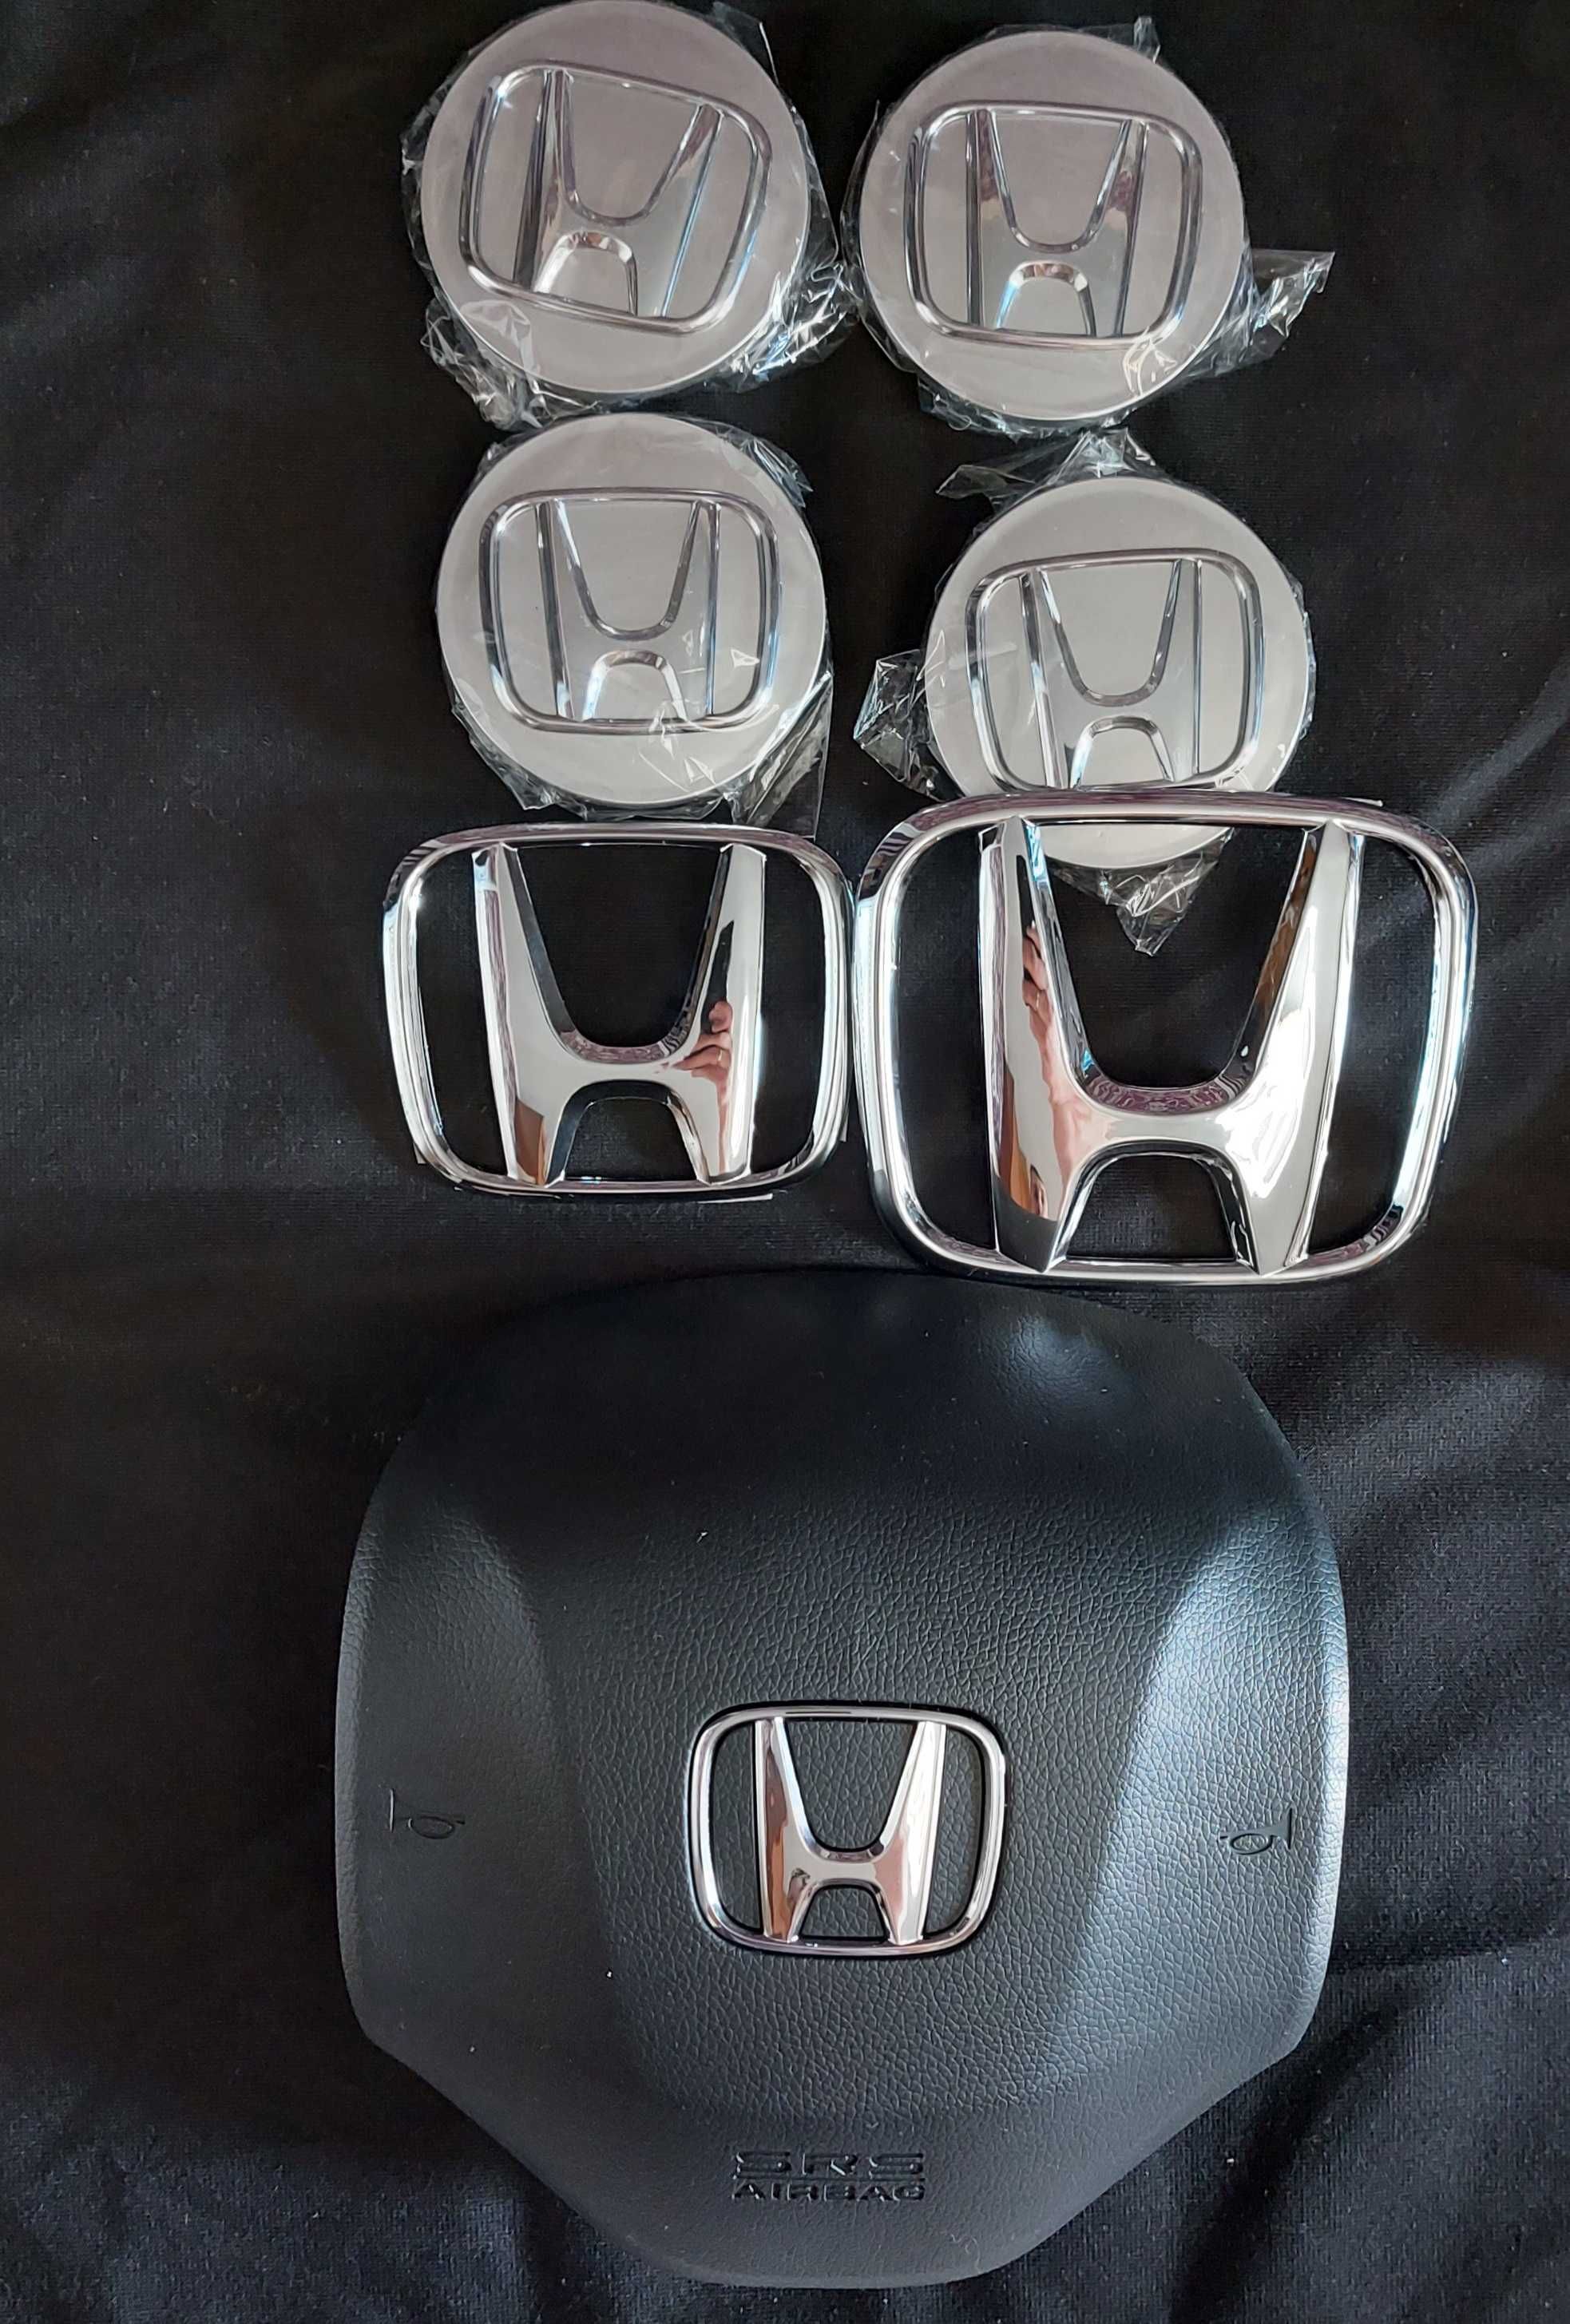 Набор значков эмблем для переделки  для  Honda M-NV Dongfeng